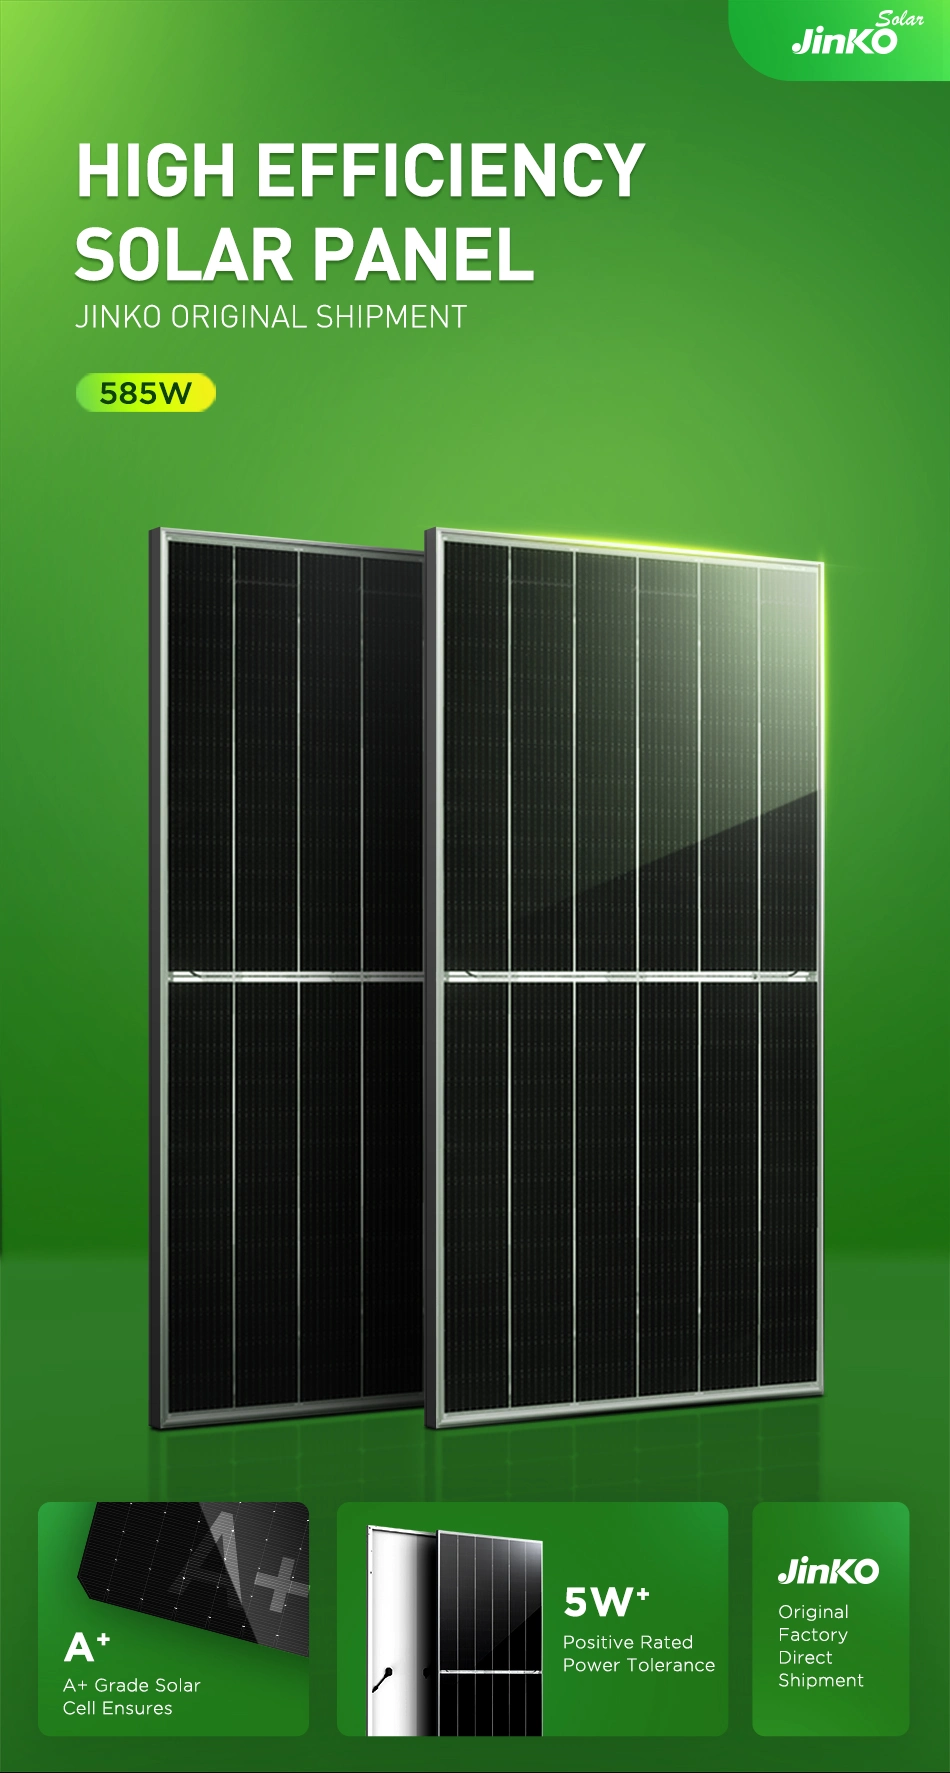 China Jinko Solar Panel Tiger Price 400watt 400w 455w 450w 420w 460w 500w 535w 540w 550w 610 410 W Precio